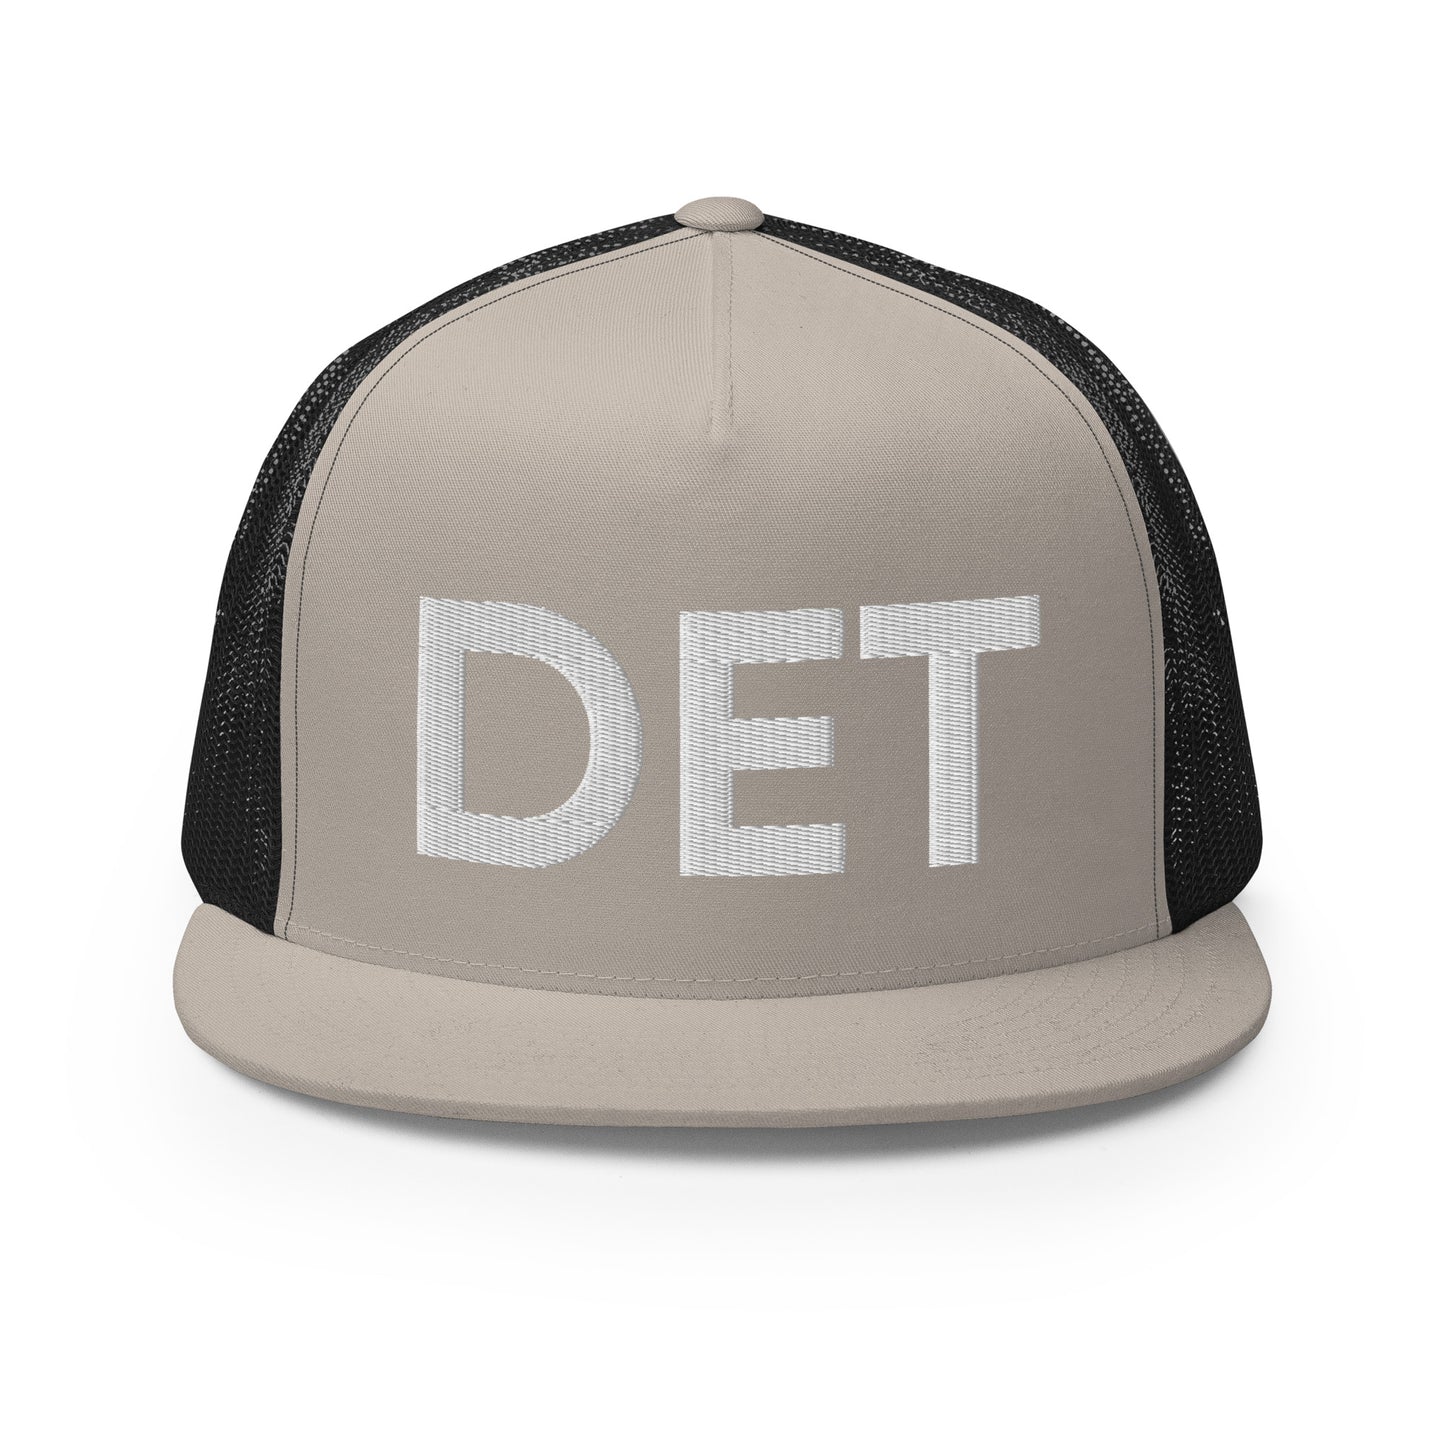 DET Detroit Trucker Hat